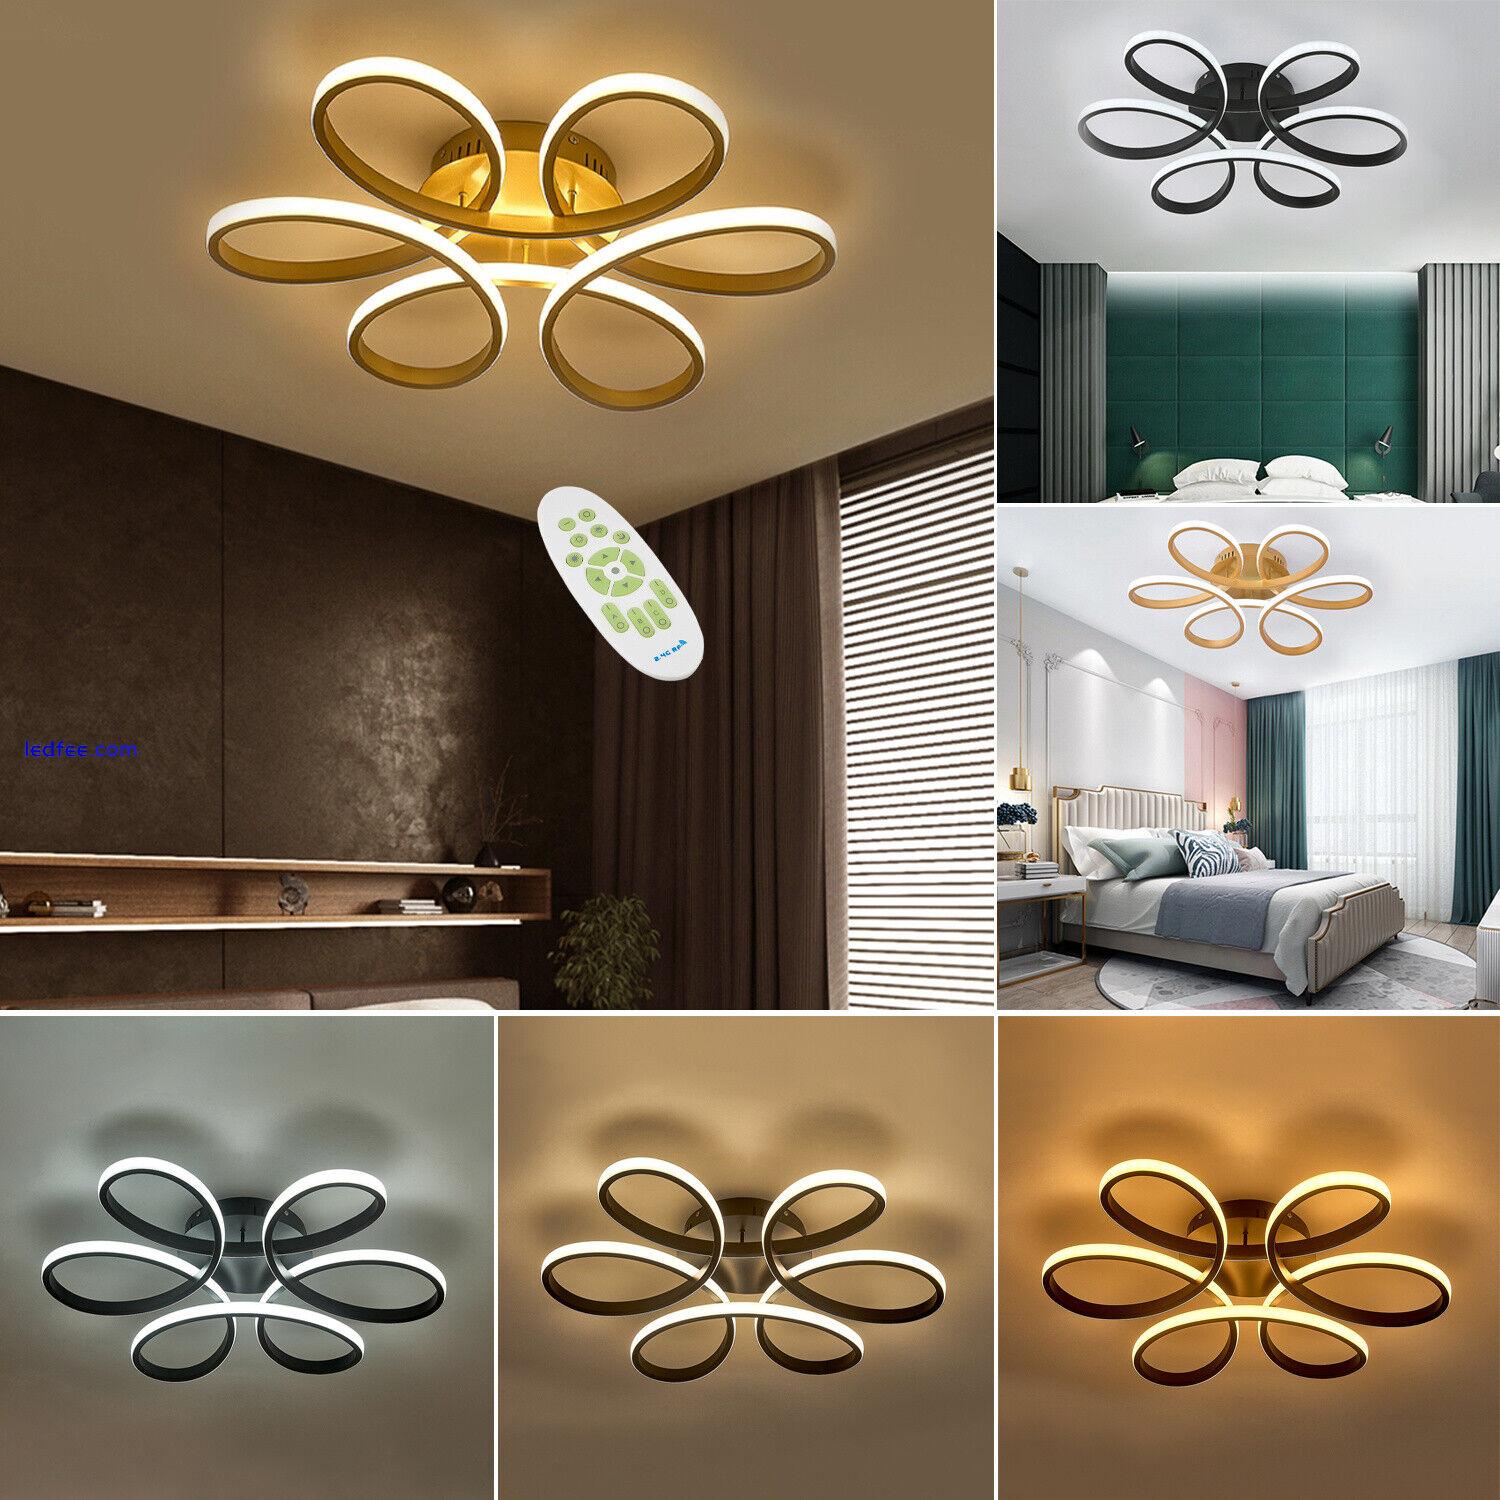 Aluminum LED Ceiling Lamp Ring Light Fixture Living Bedroom Cool White Lighting 1 